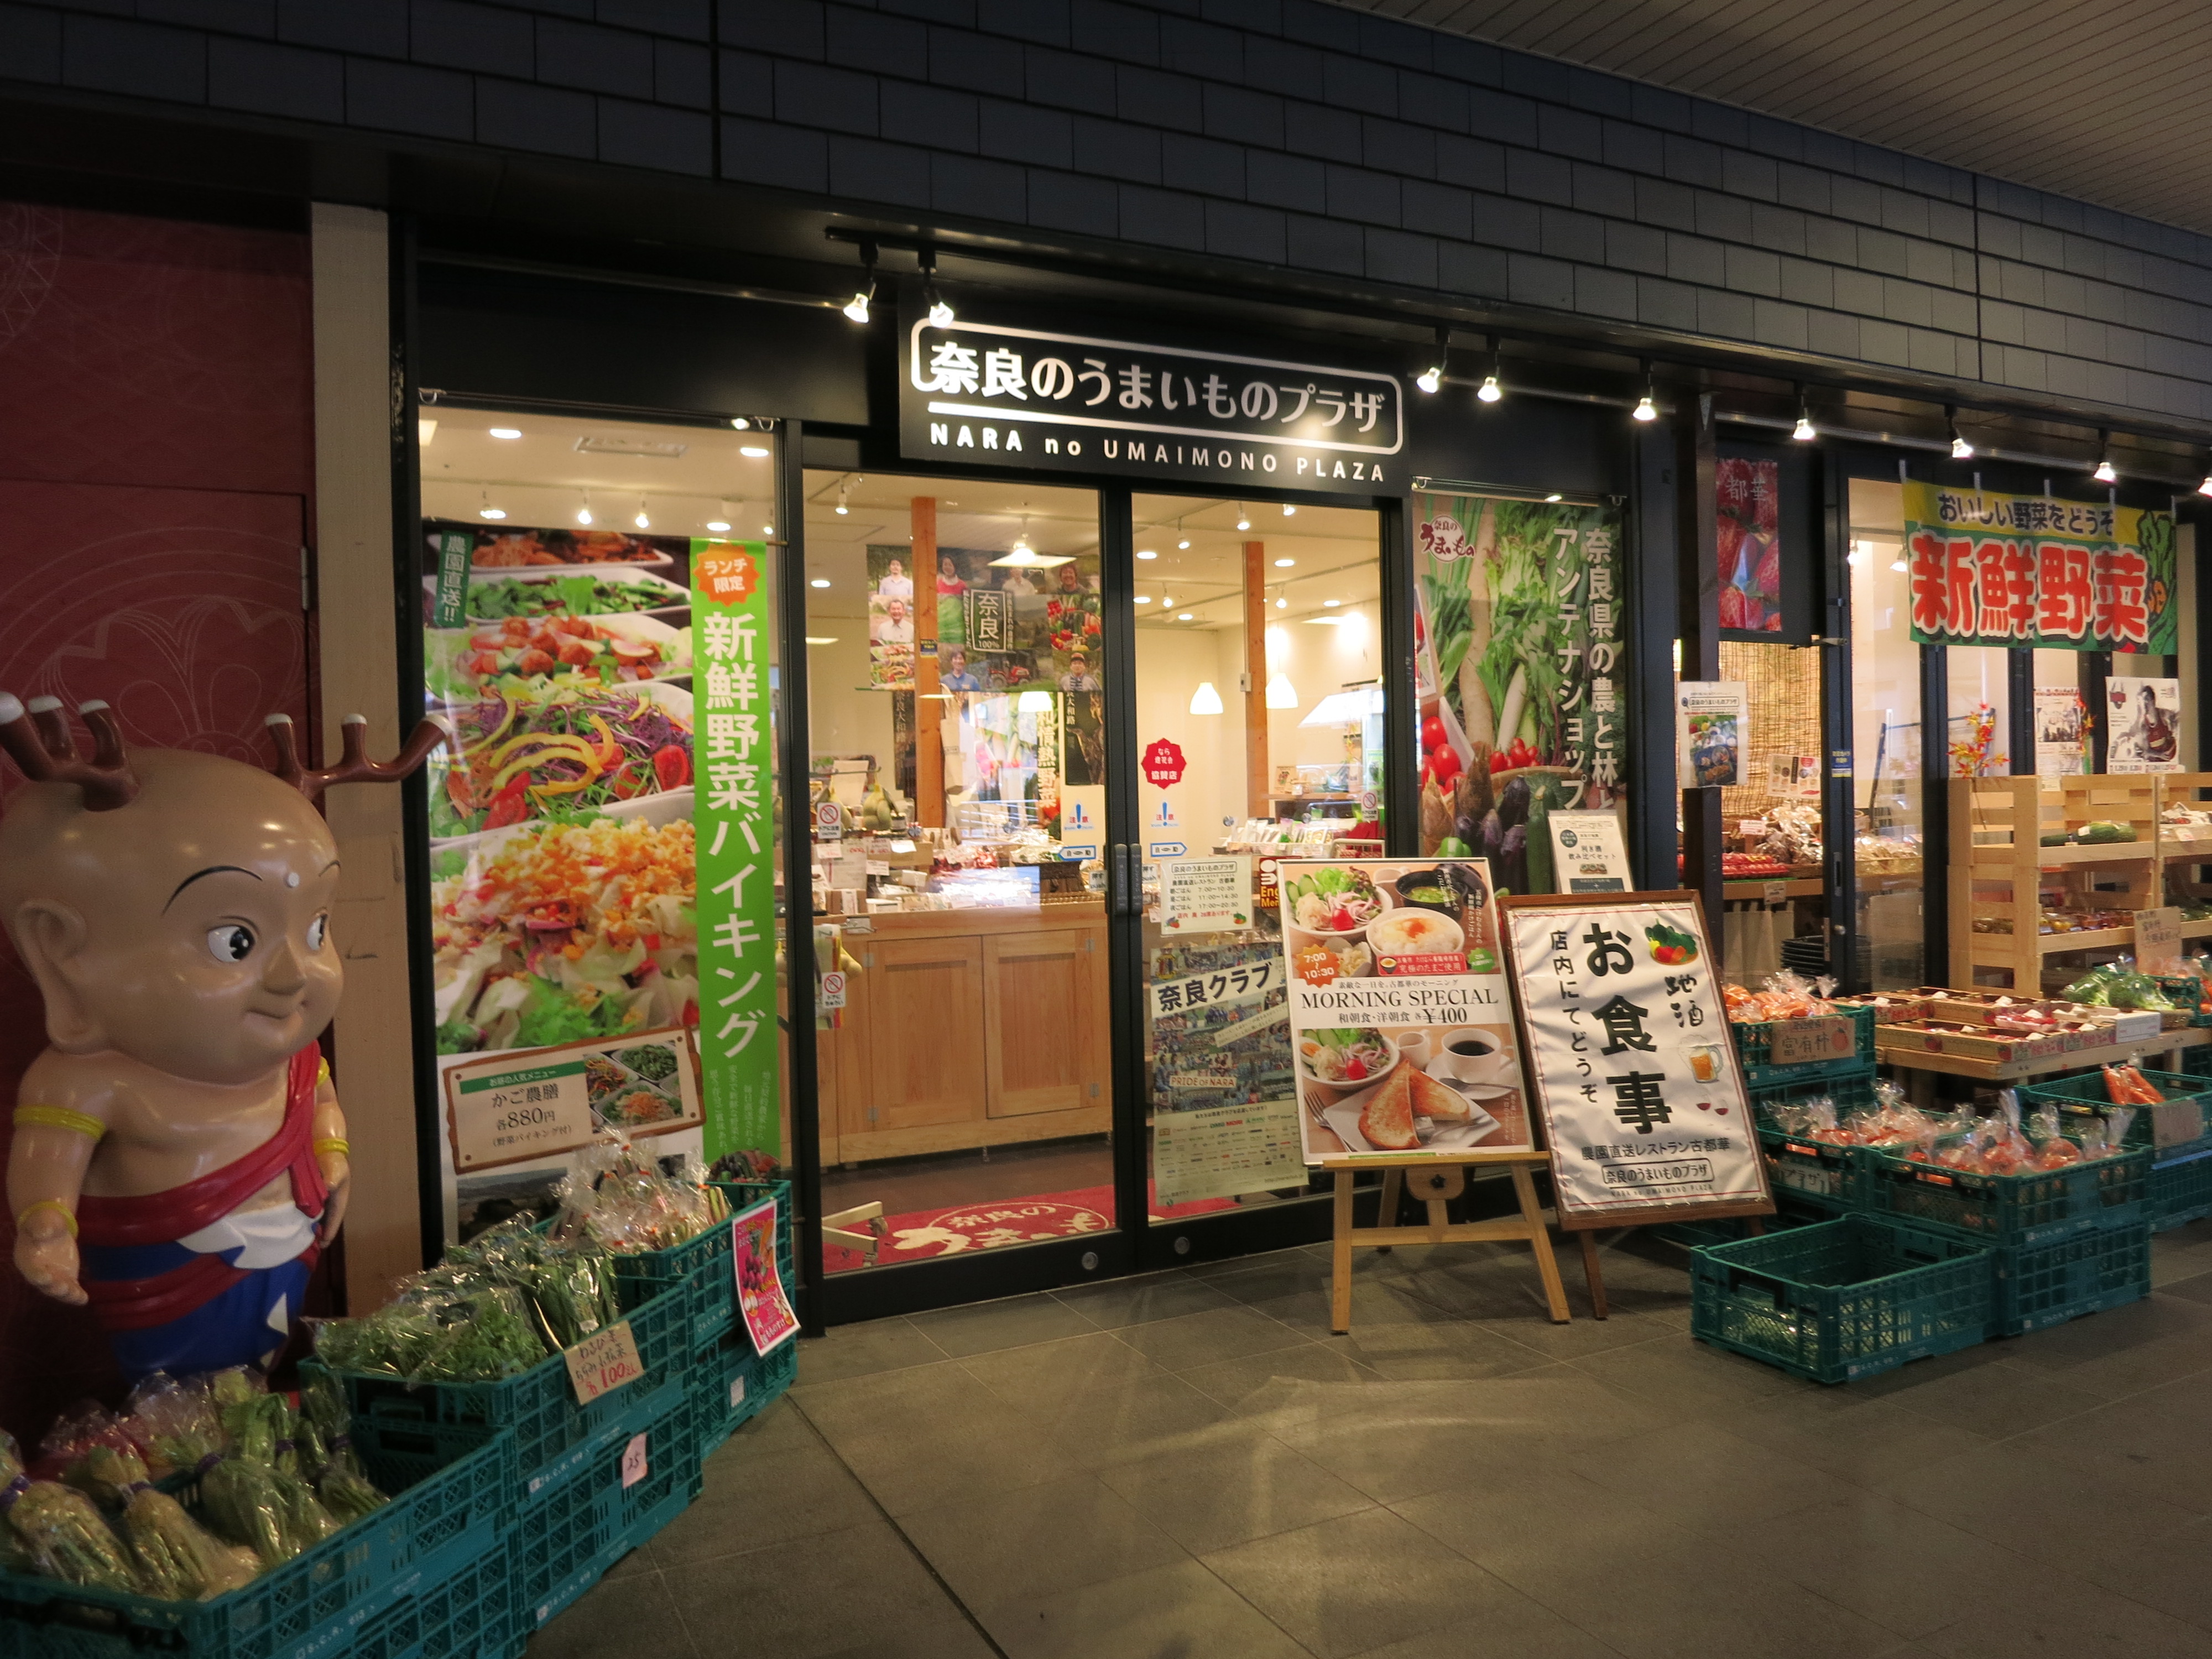 県産品を扱うショップがあります。こちらはJR奈良駅下。農園レストランとしてモーニングもやっています。